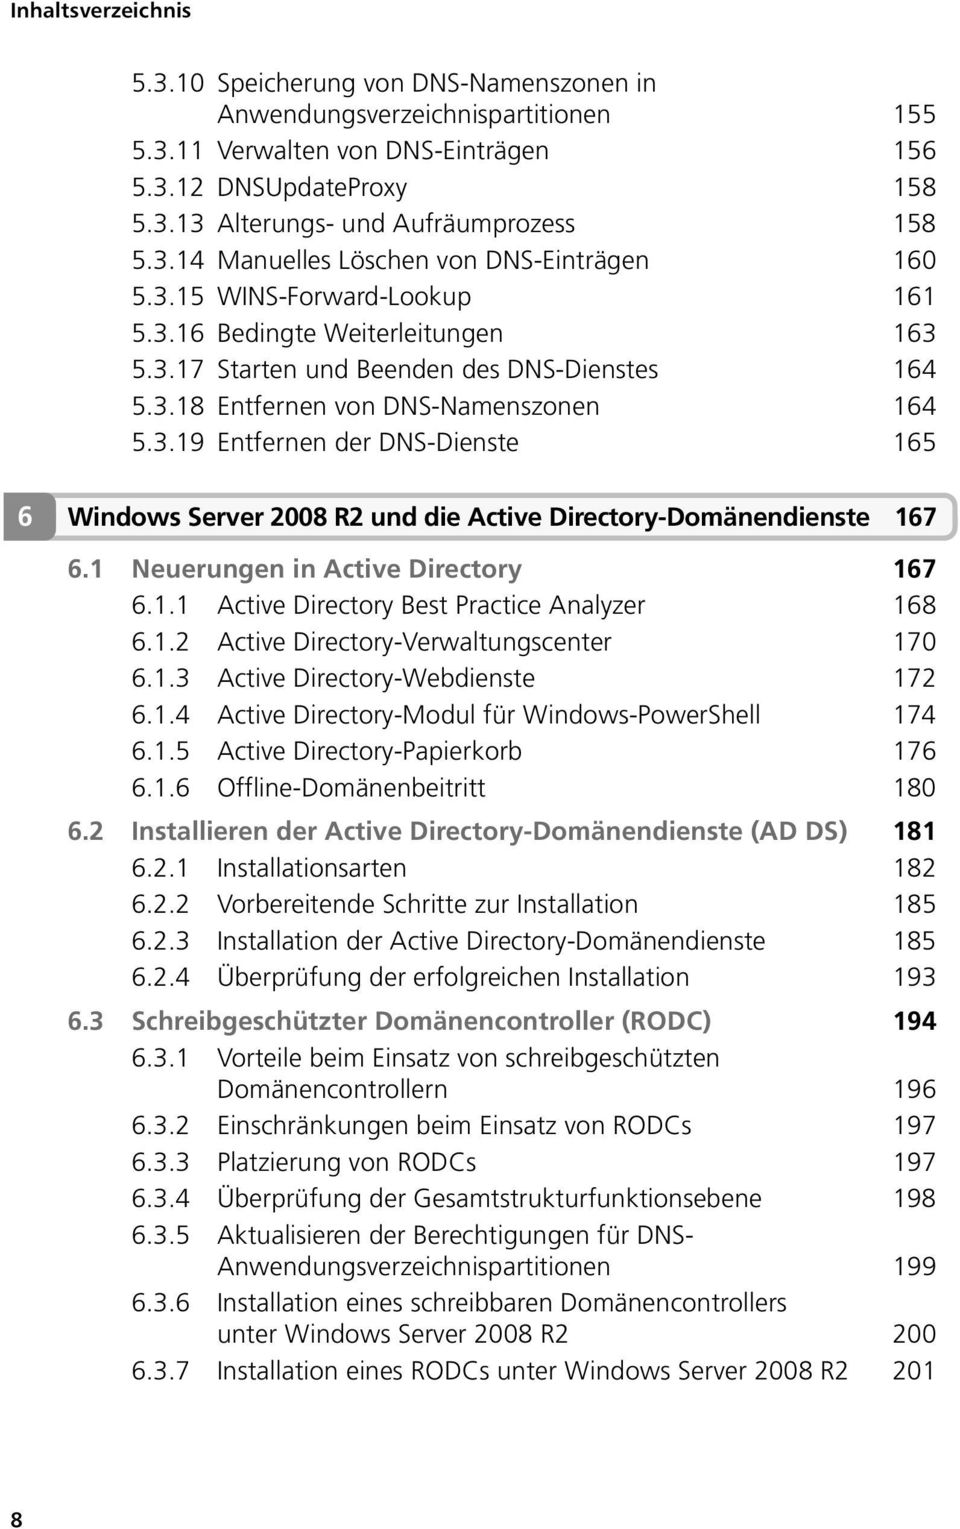 1 Neuerungen in Active Directory 167 6.1.1 Active Directory Best Practice Analyzer 168 6.1.2 Active Directory-Verwaltungscenter 170 6.1.3 Active Directory-Webdienste 172 6.1.4 Active Directory-Modul für Windows-PowerShell 174 6.